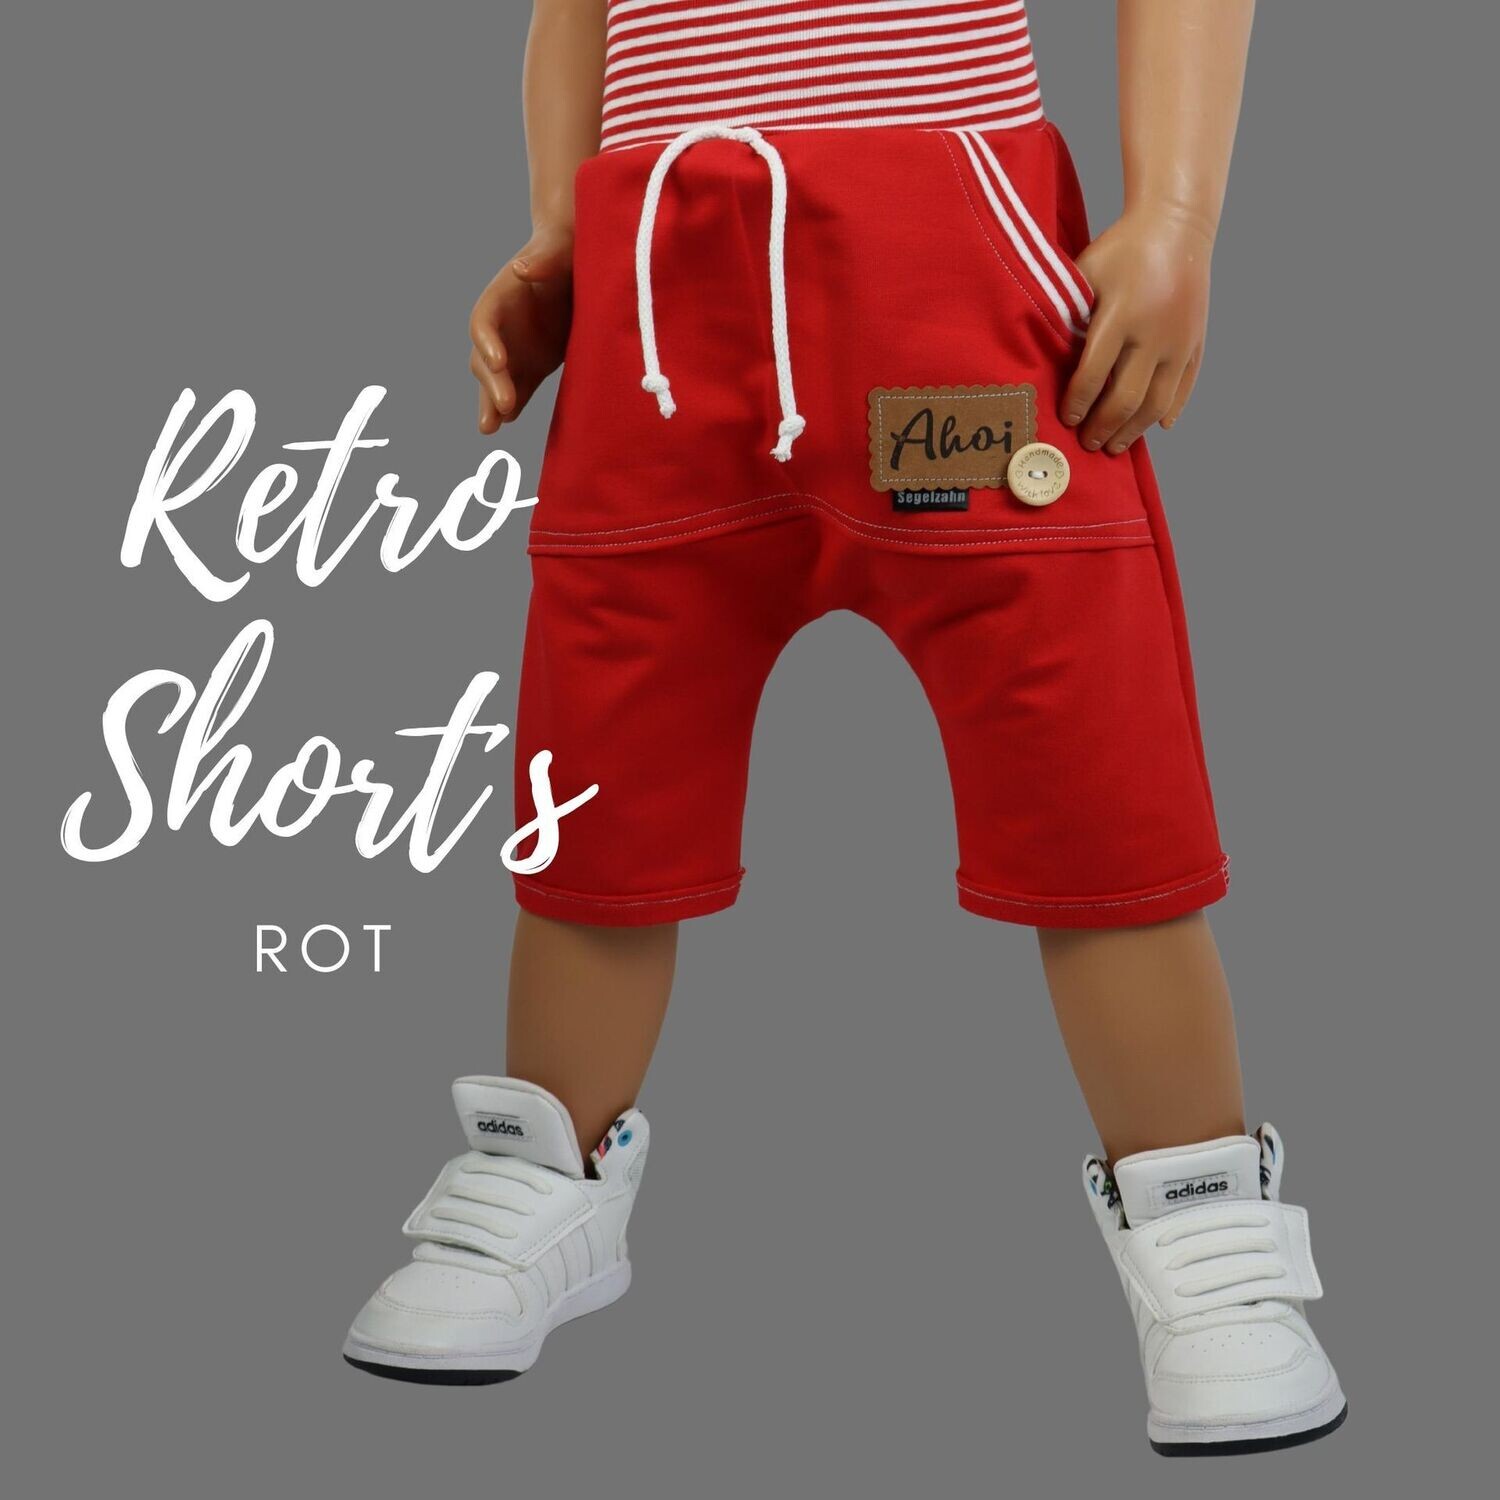 Retro Shorts Kinder, kurze Hose Unisex Rot, Kinderhose für Jungen und  Mädchen, Sweat Jogger Kind Baby Sommerhose Vintage